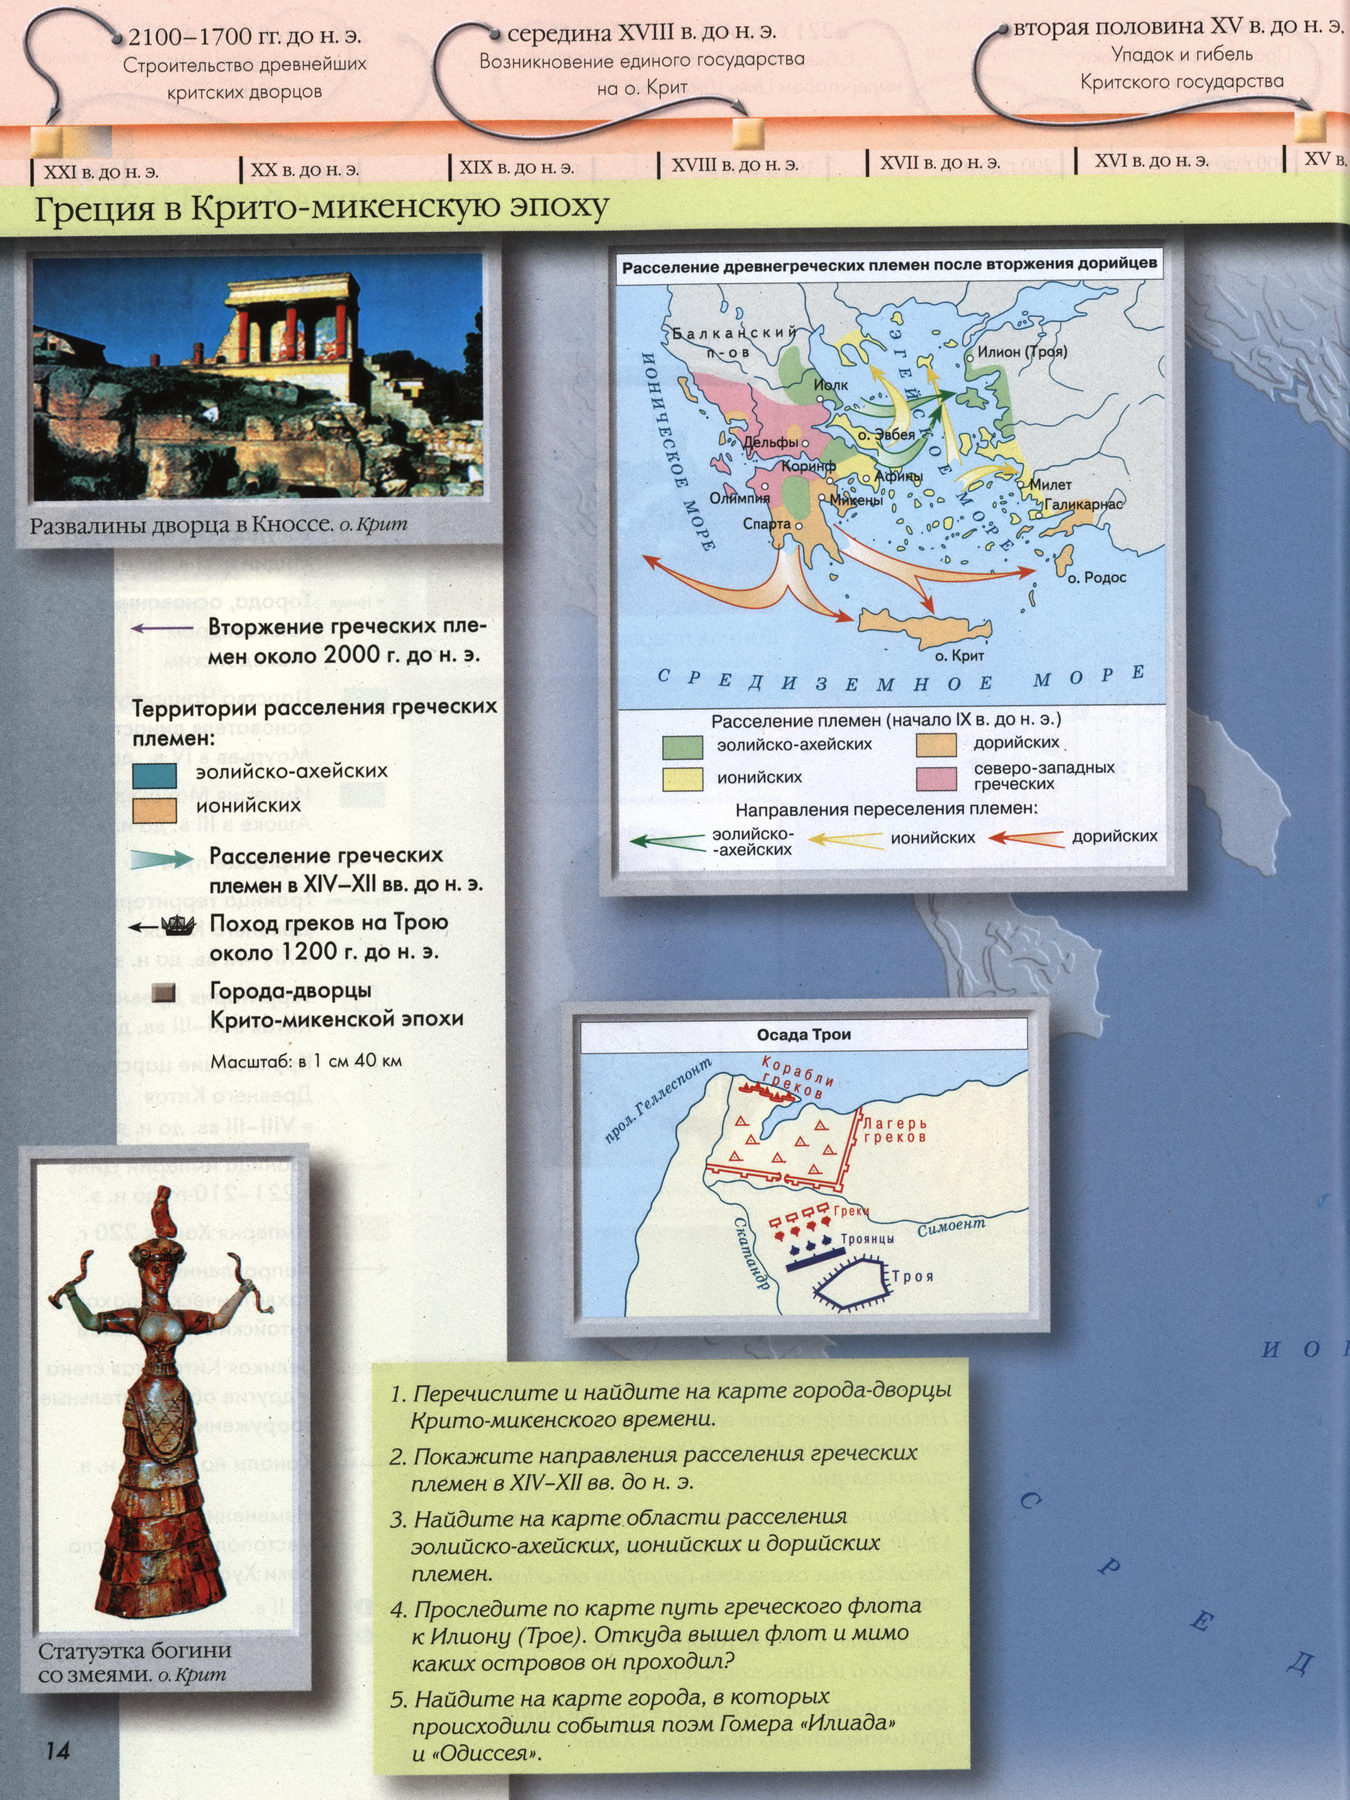 Греция в Крито-микенскую эпоху